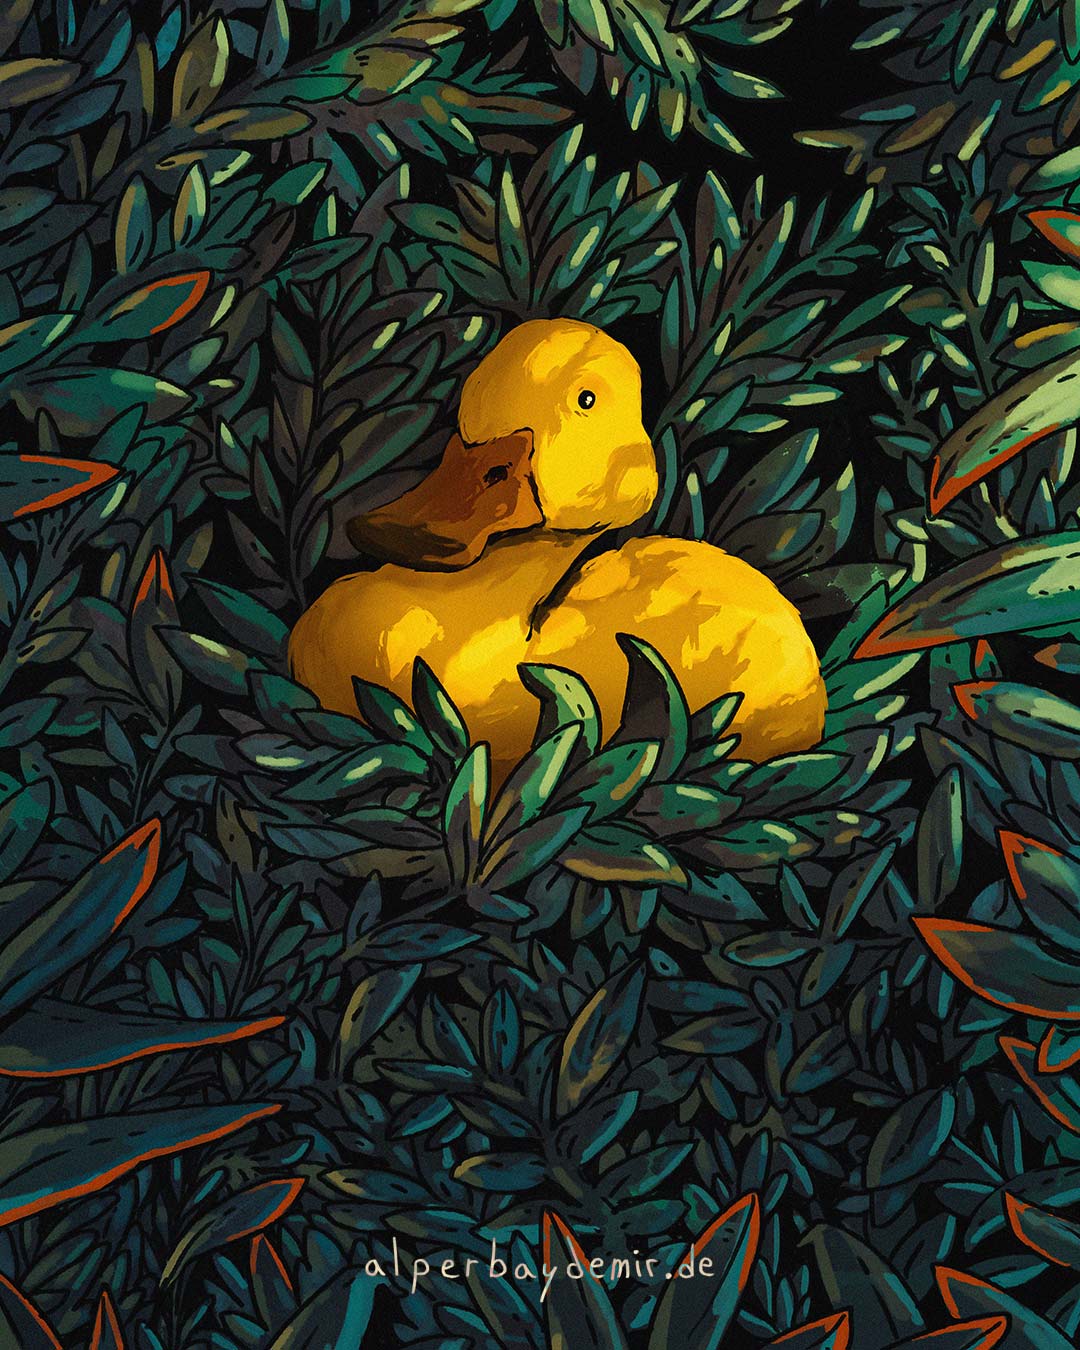 Eine Illustration einer süßen gelben Ente, die inmitten von grünem Gestrüpp sitzt.